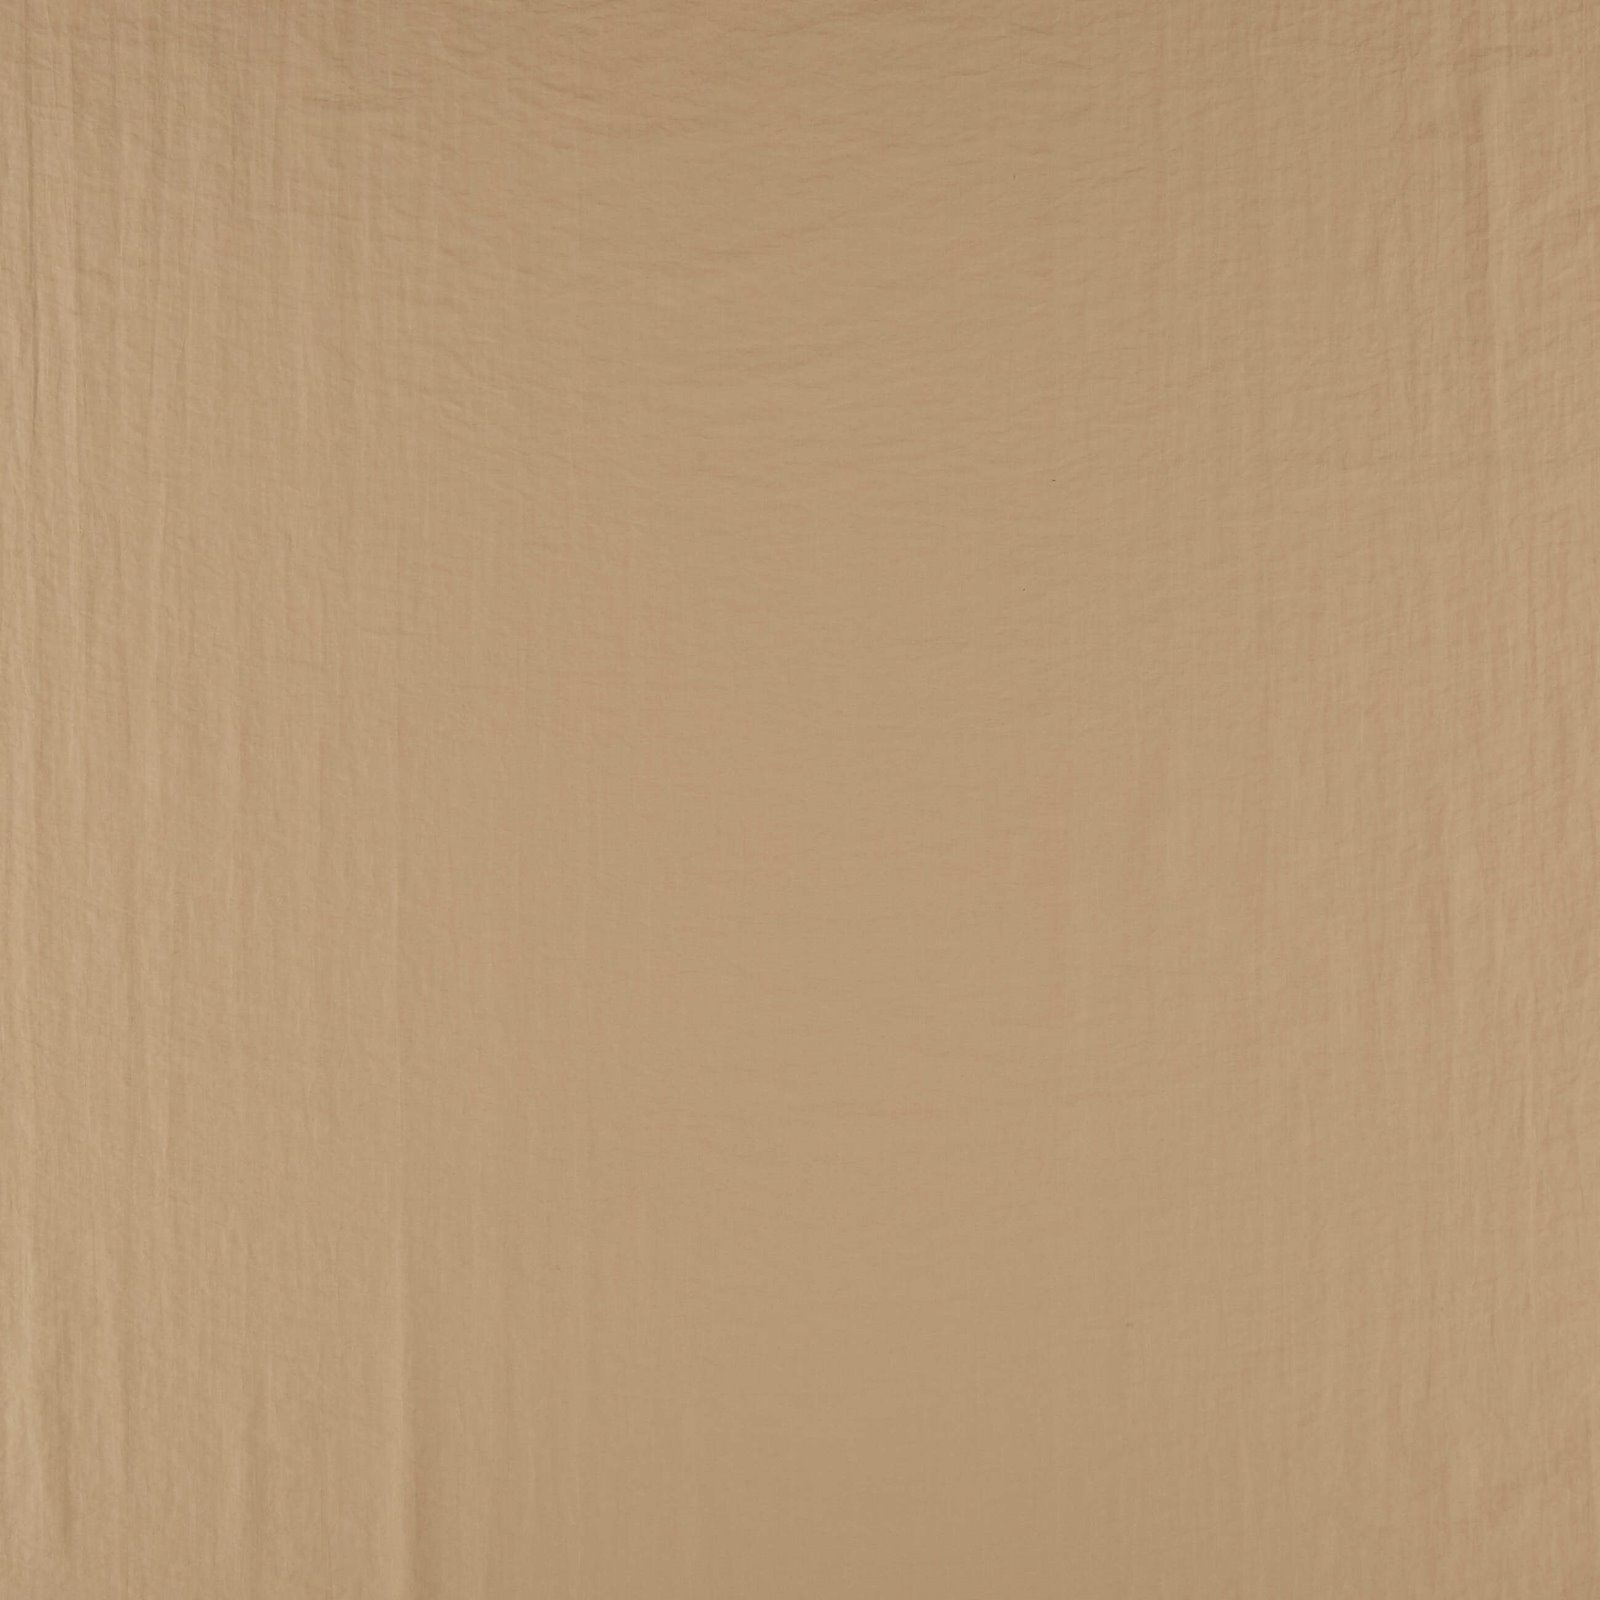 Woven taslan with structur dark beige 560285_pack_solid